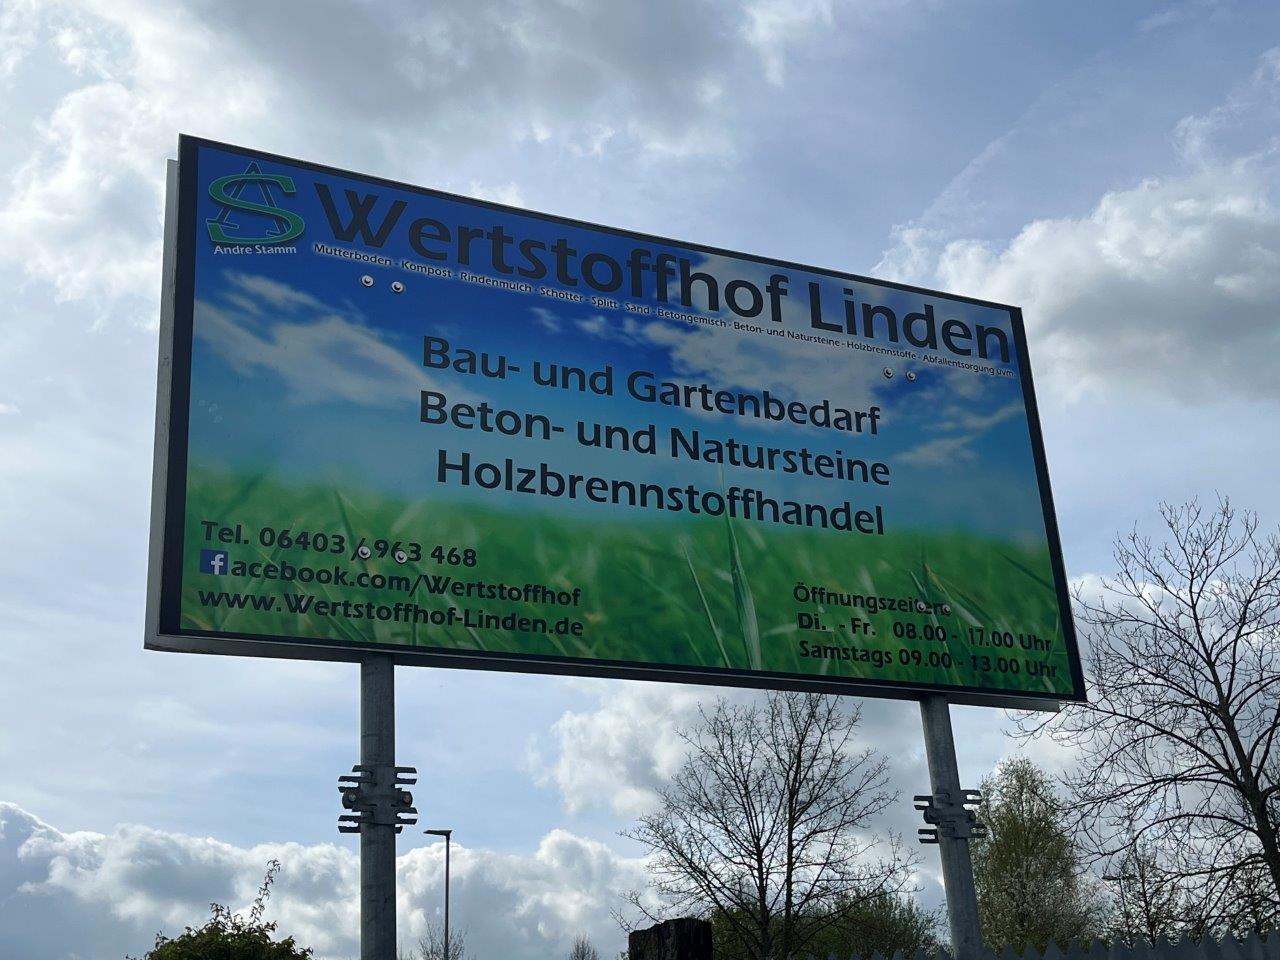 (c) Wertstoffhof-linden.de